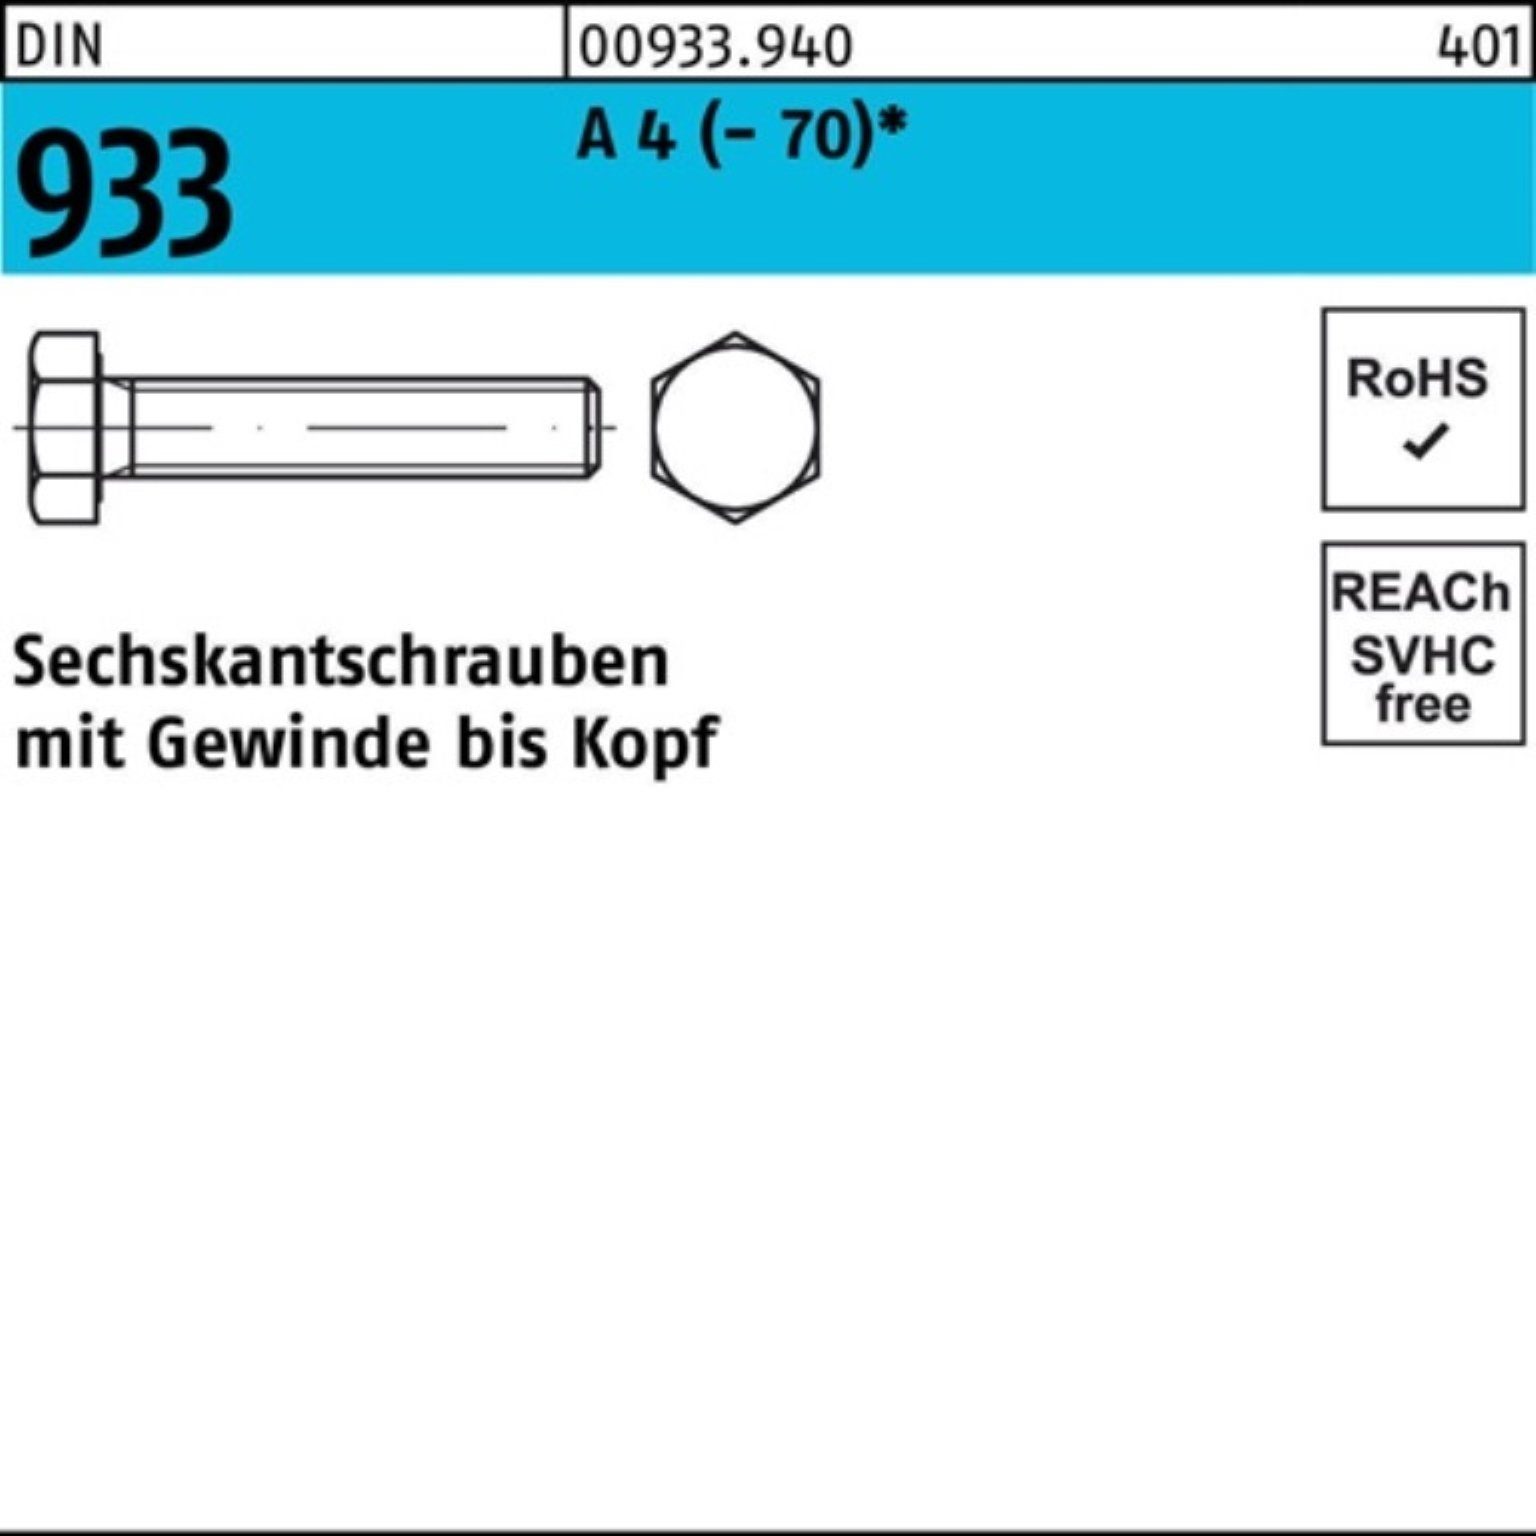 Pack Stück VG 100er (70) M24x Sechskantschraube 45 Sechskantschraube Reyher 933 4 DIN DI 1 A